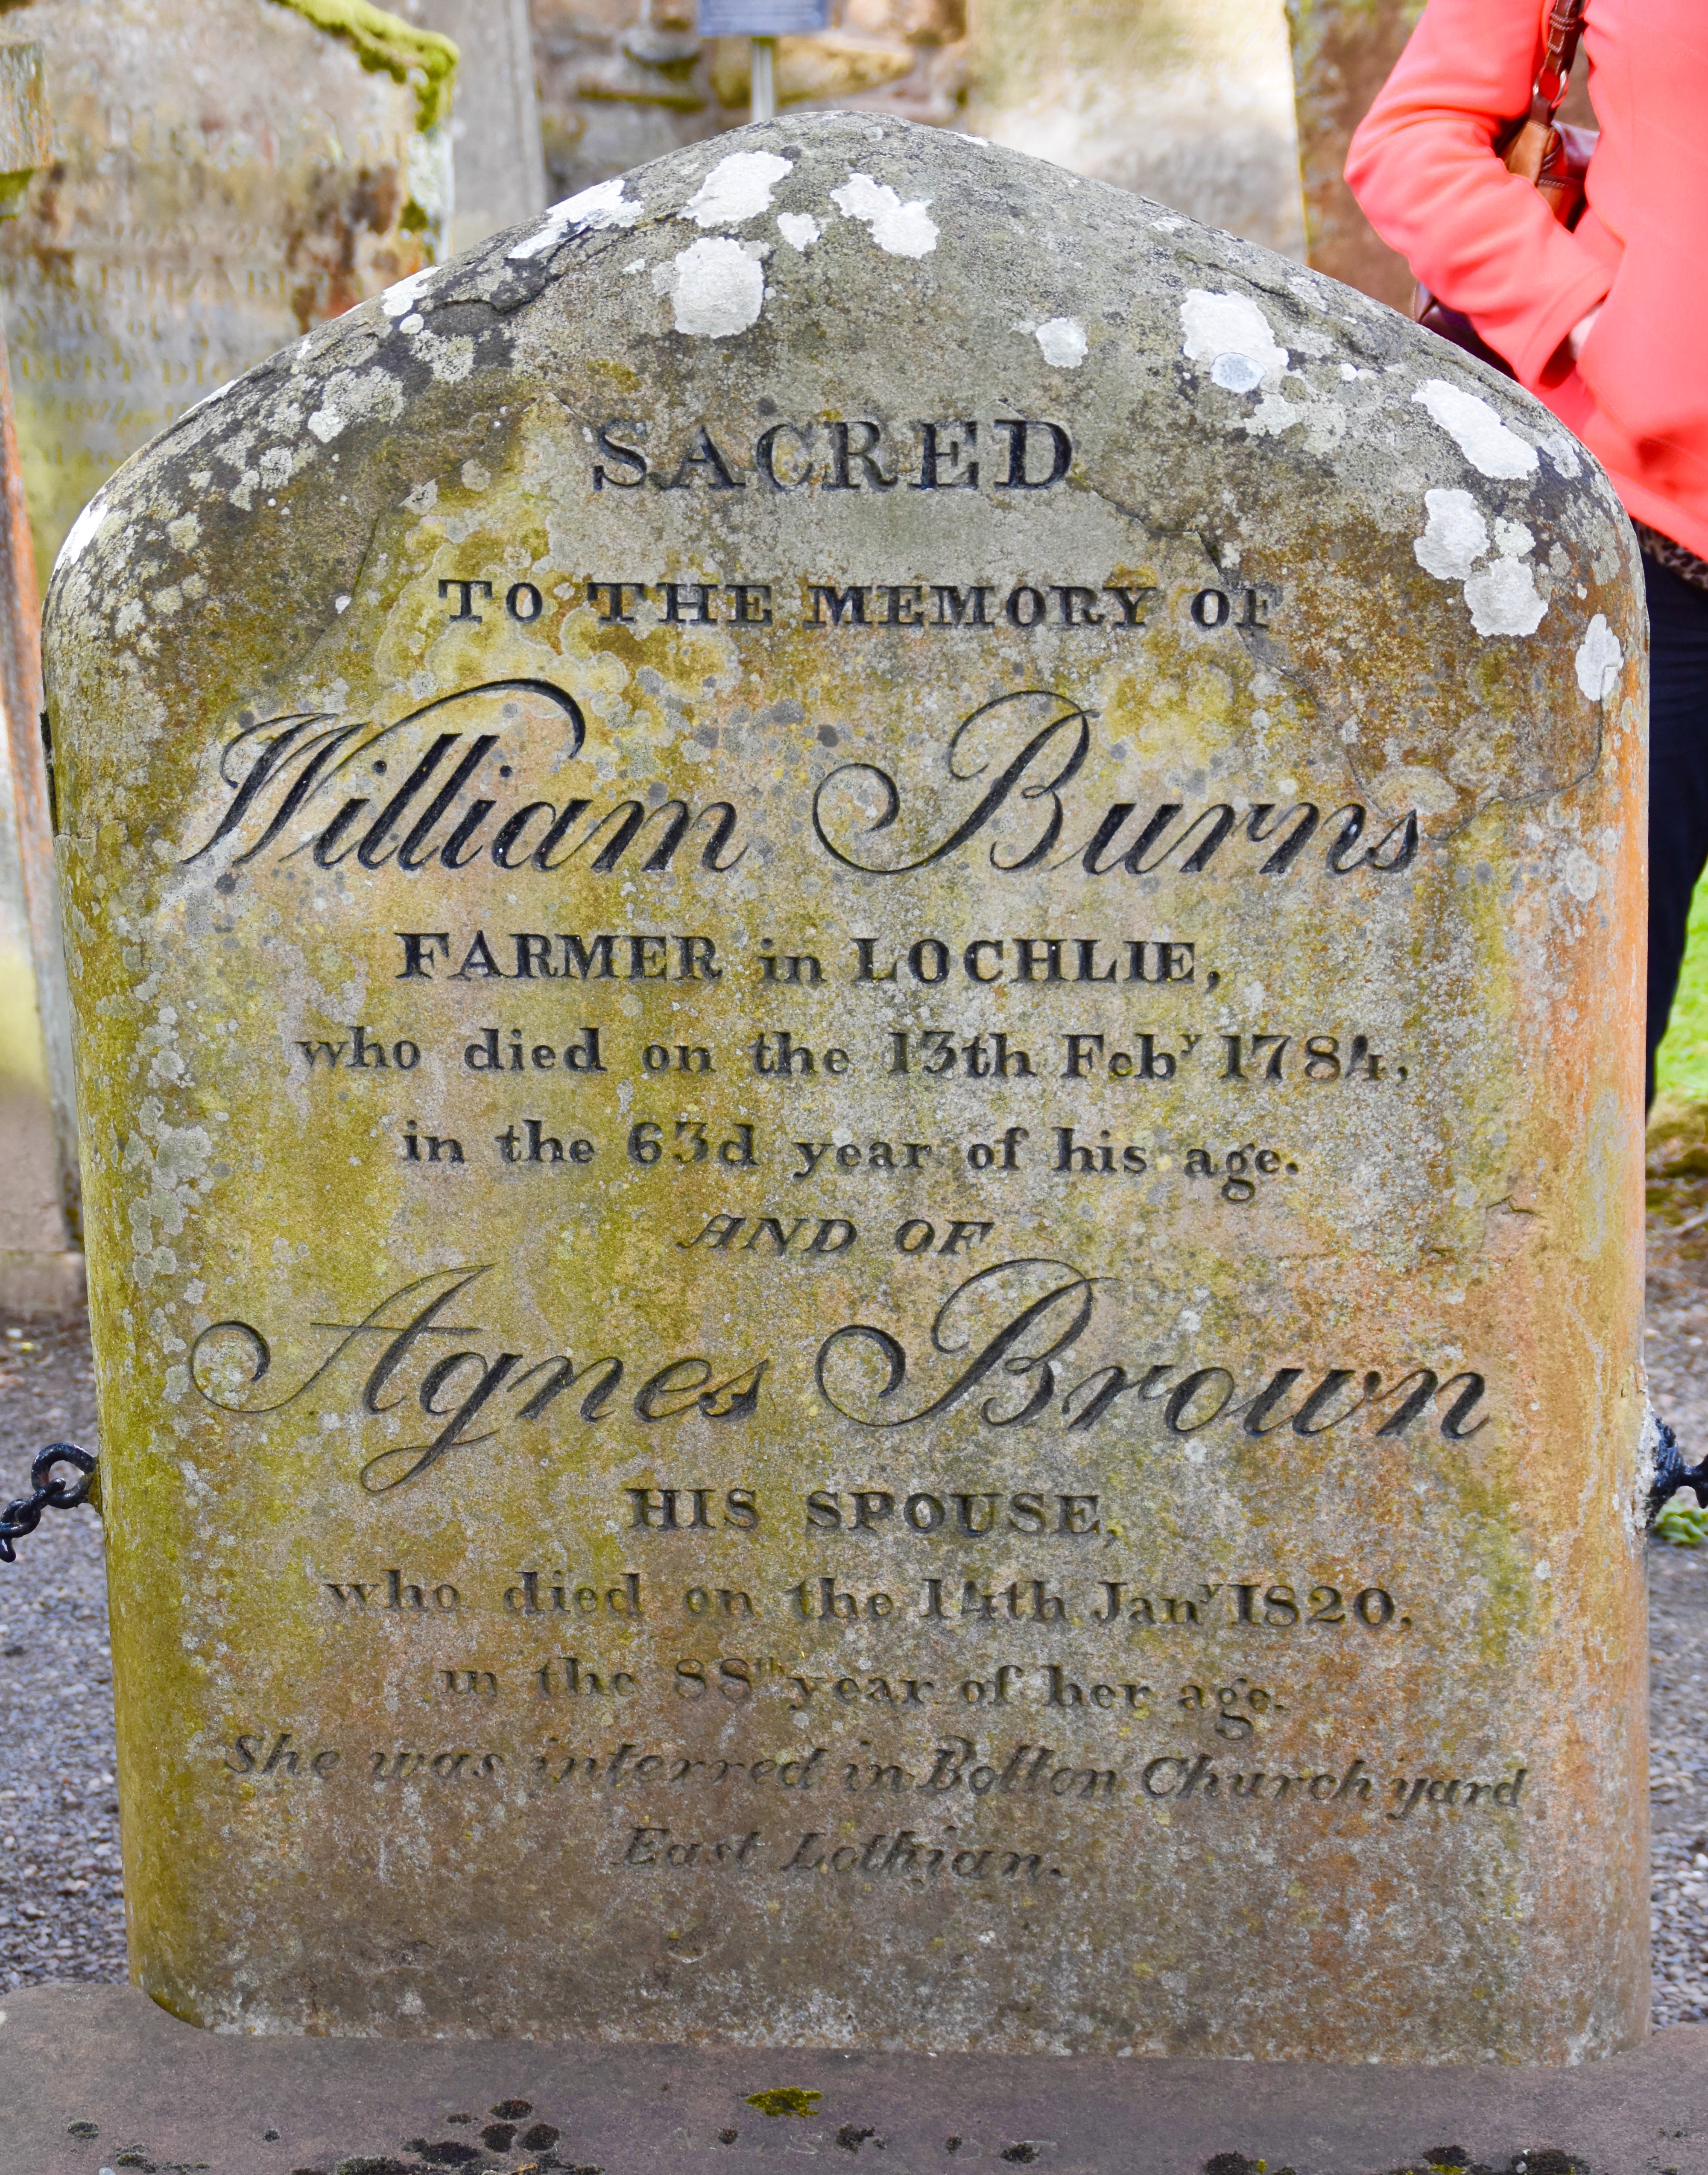 Robbie Burns' Parents Grave